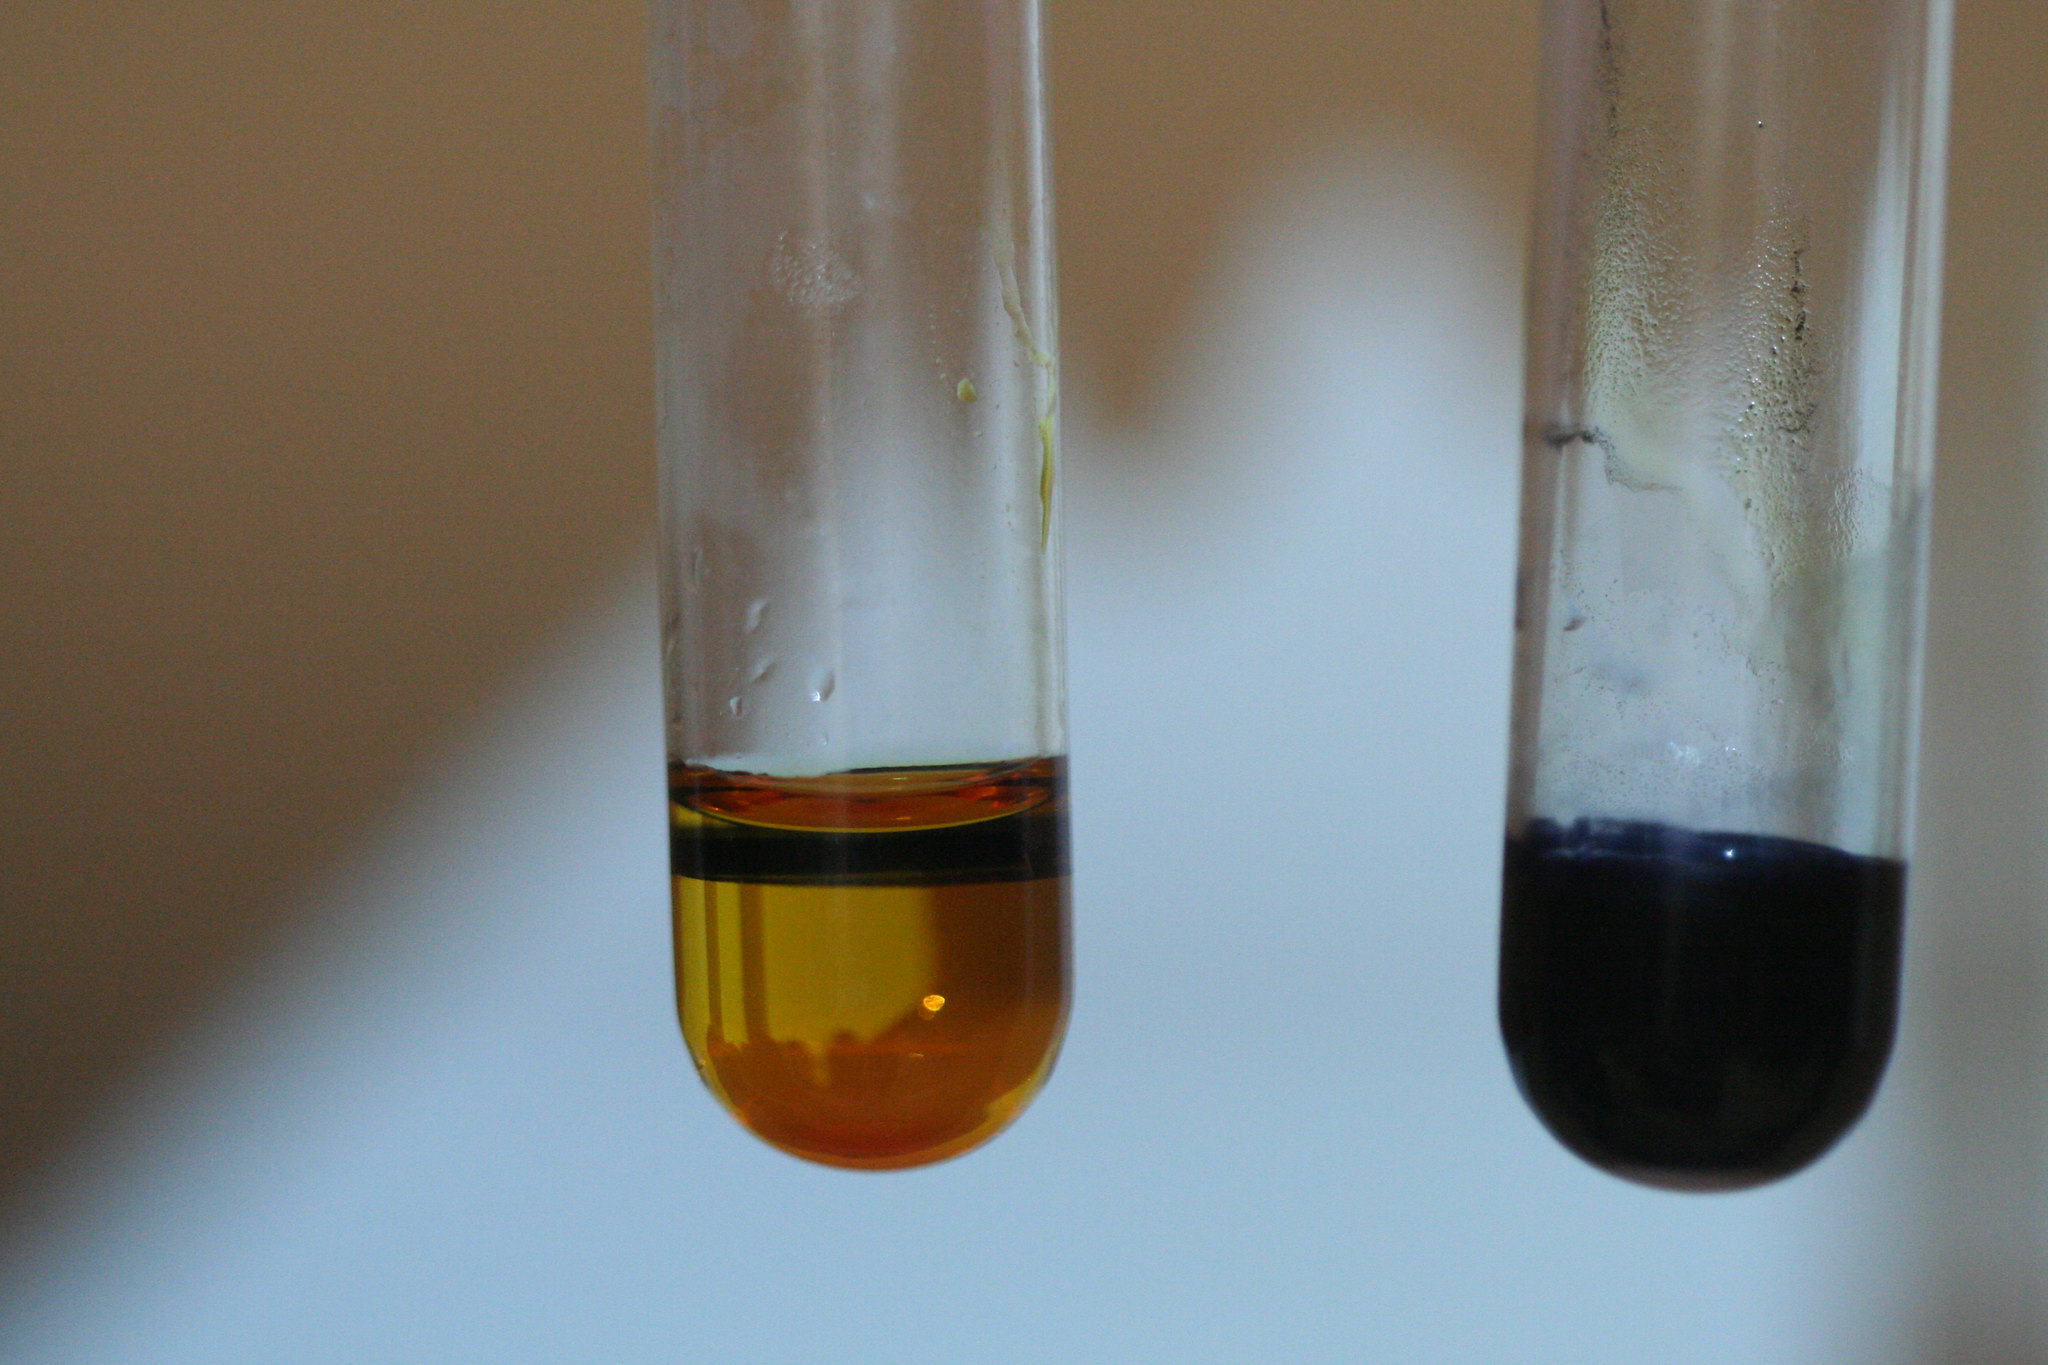 Получить сульфат свинца. Hg2i2 цвет осадка. Хлорид меди в пробирке. Пробирка с раствором. Реакция в пробирке.